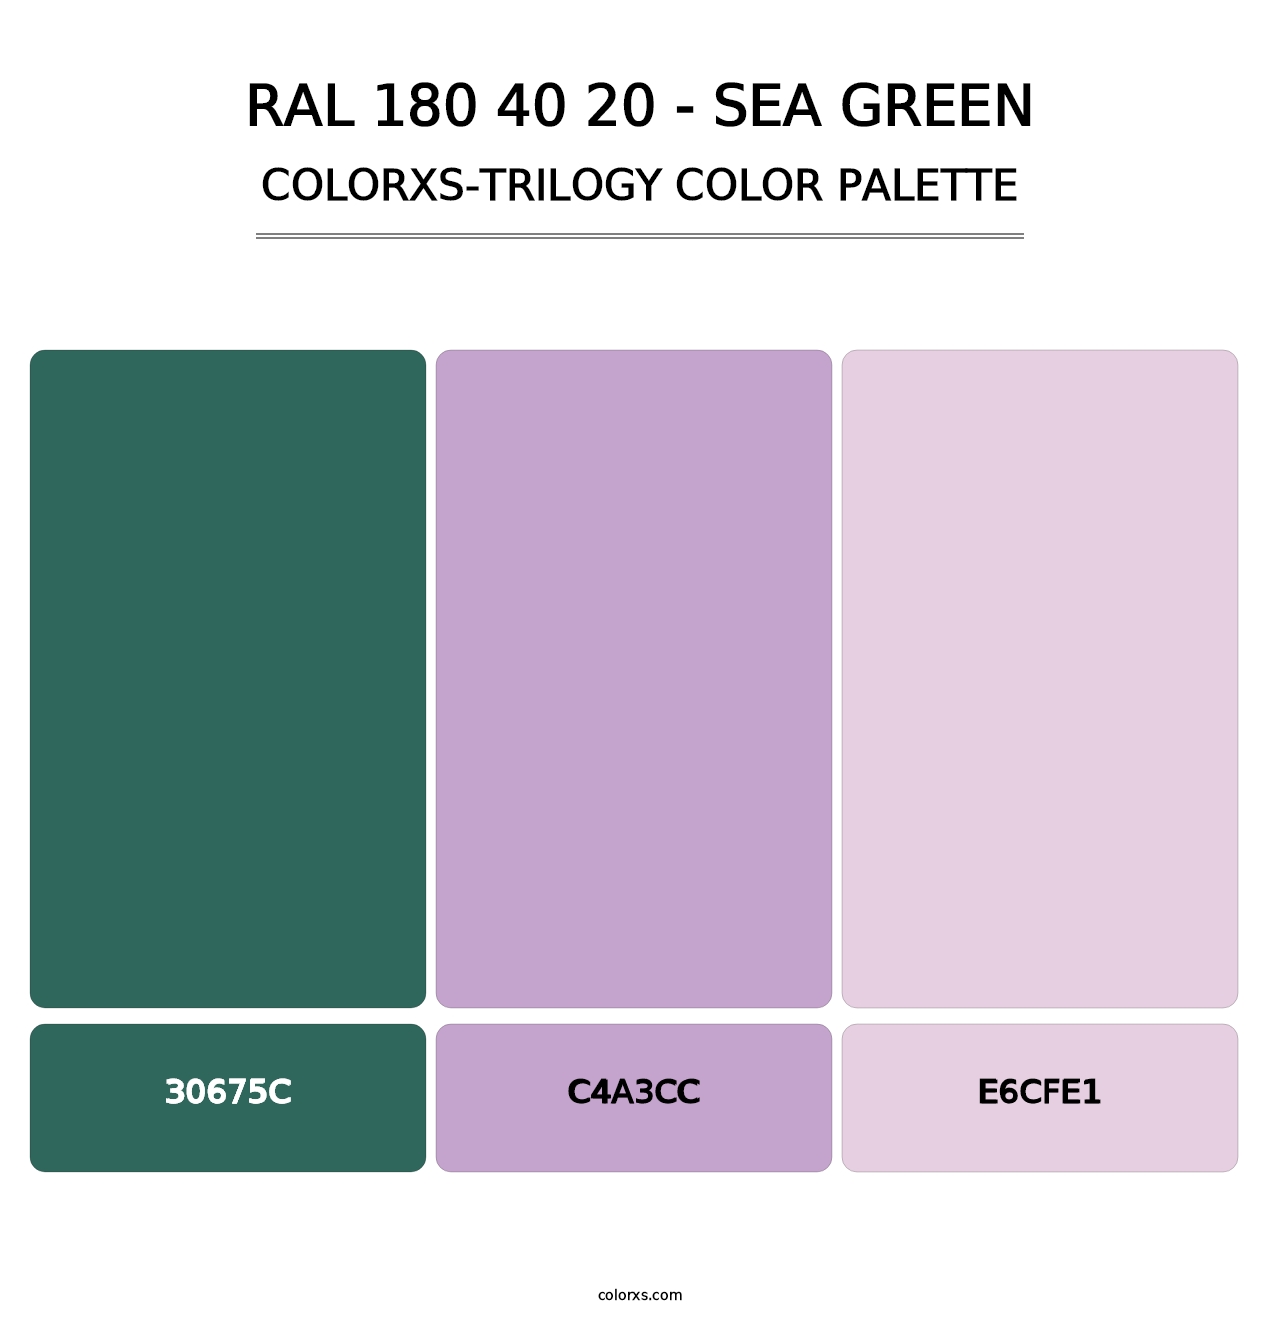 RAL 180 40 20 - Sea Green - Colorxs Trilogy Palette